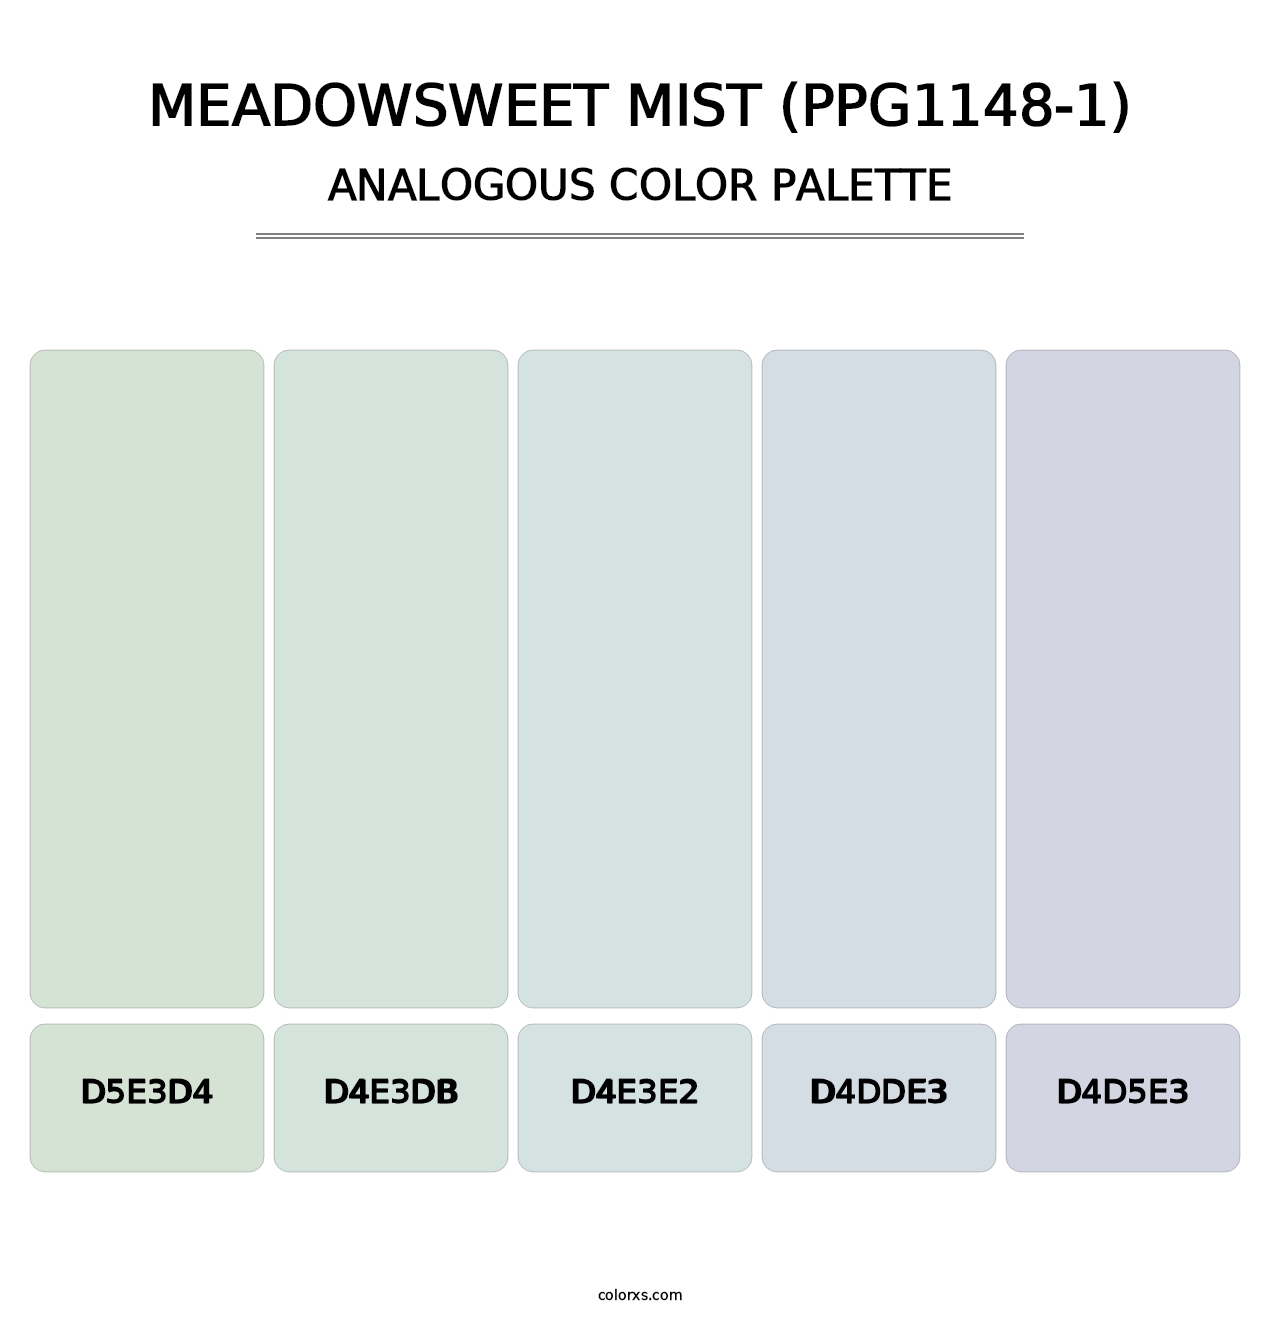 Meadowsweet Mist (PPG1148-1) - Analogous Color Palette